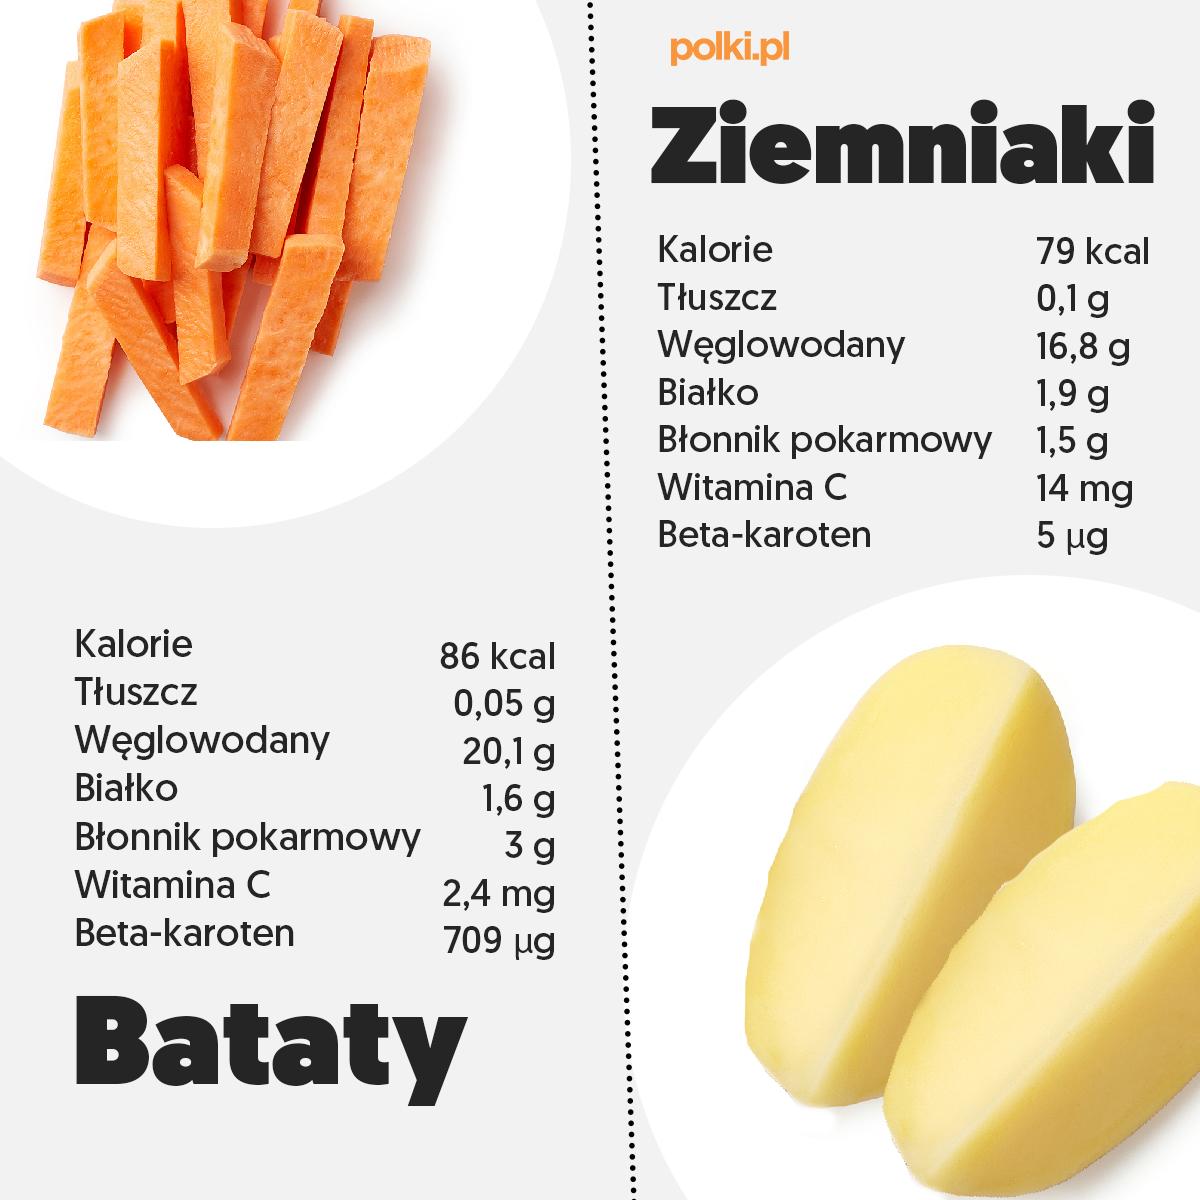 Patates douces contre pommes de terre - infographie 